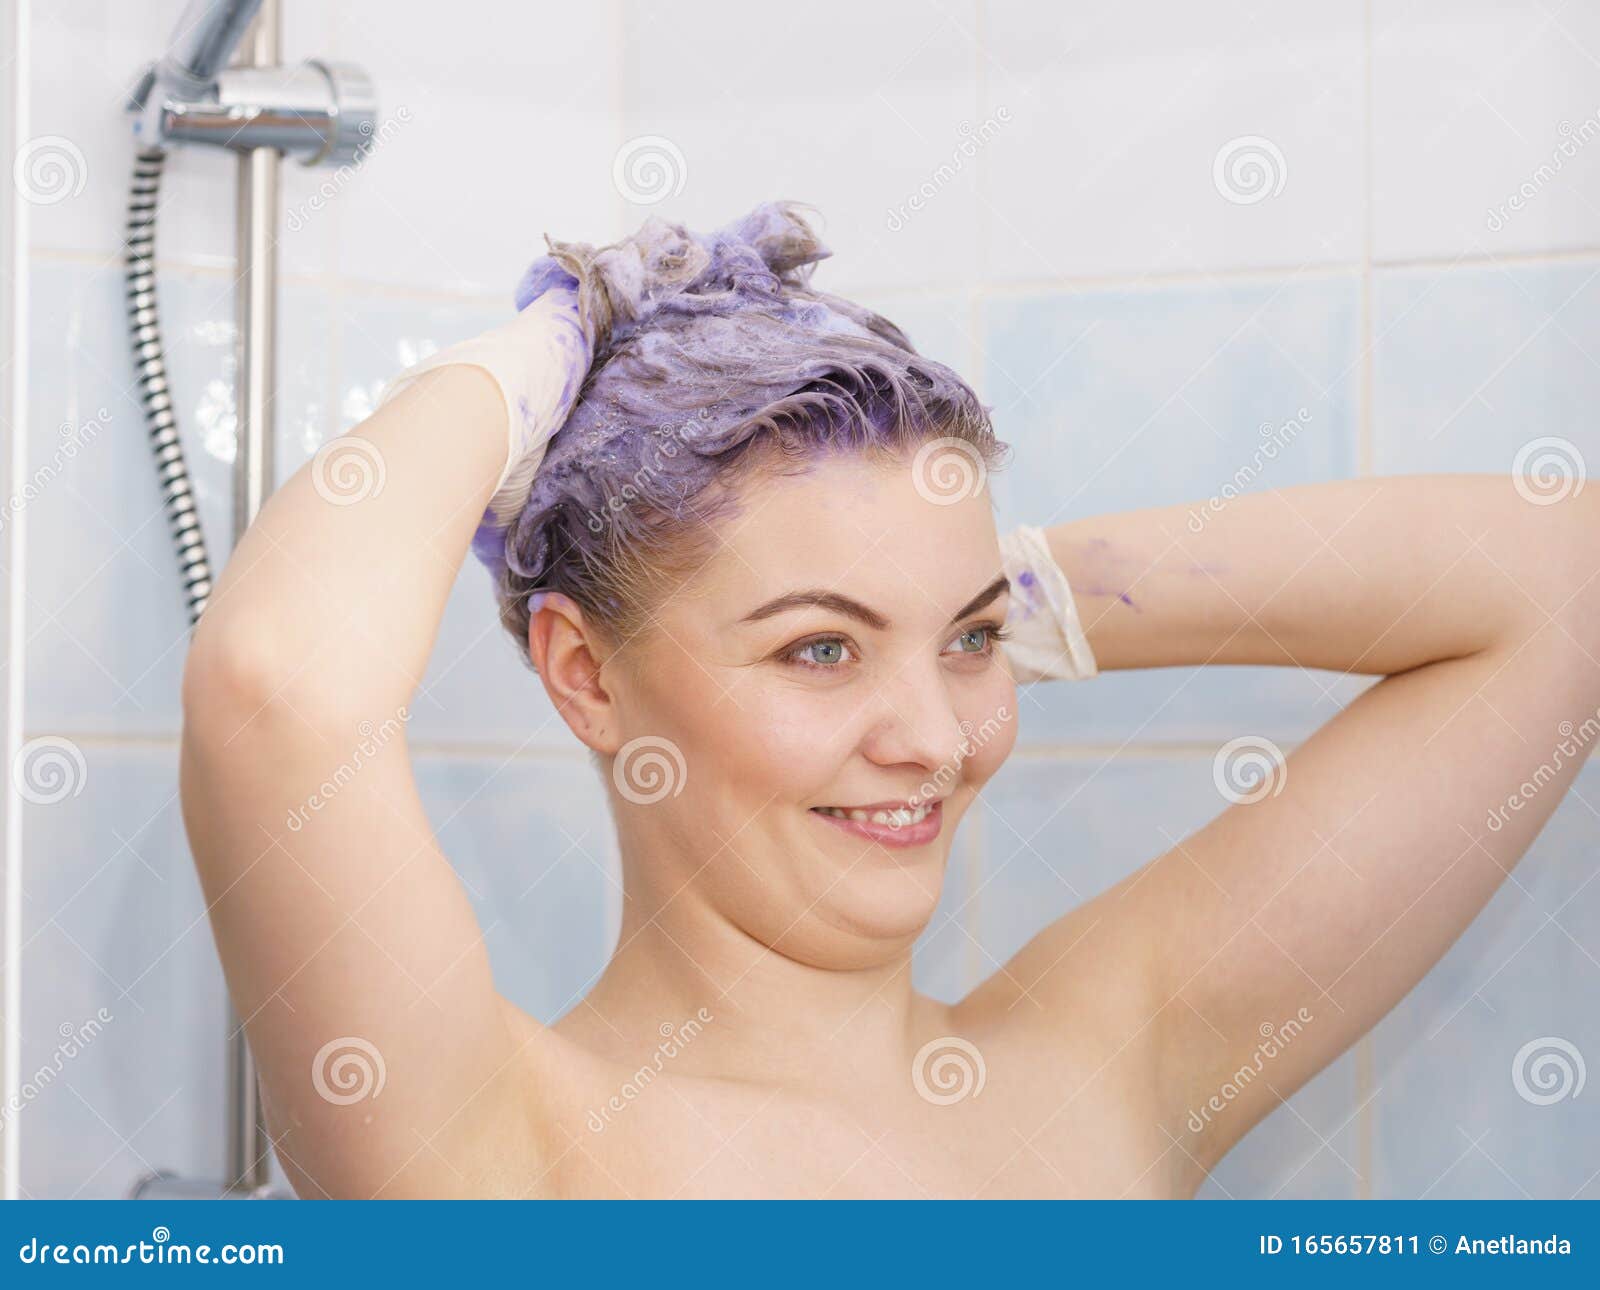 Blonde shower